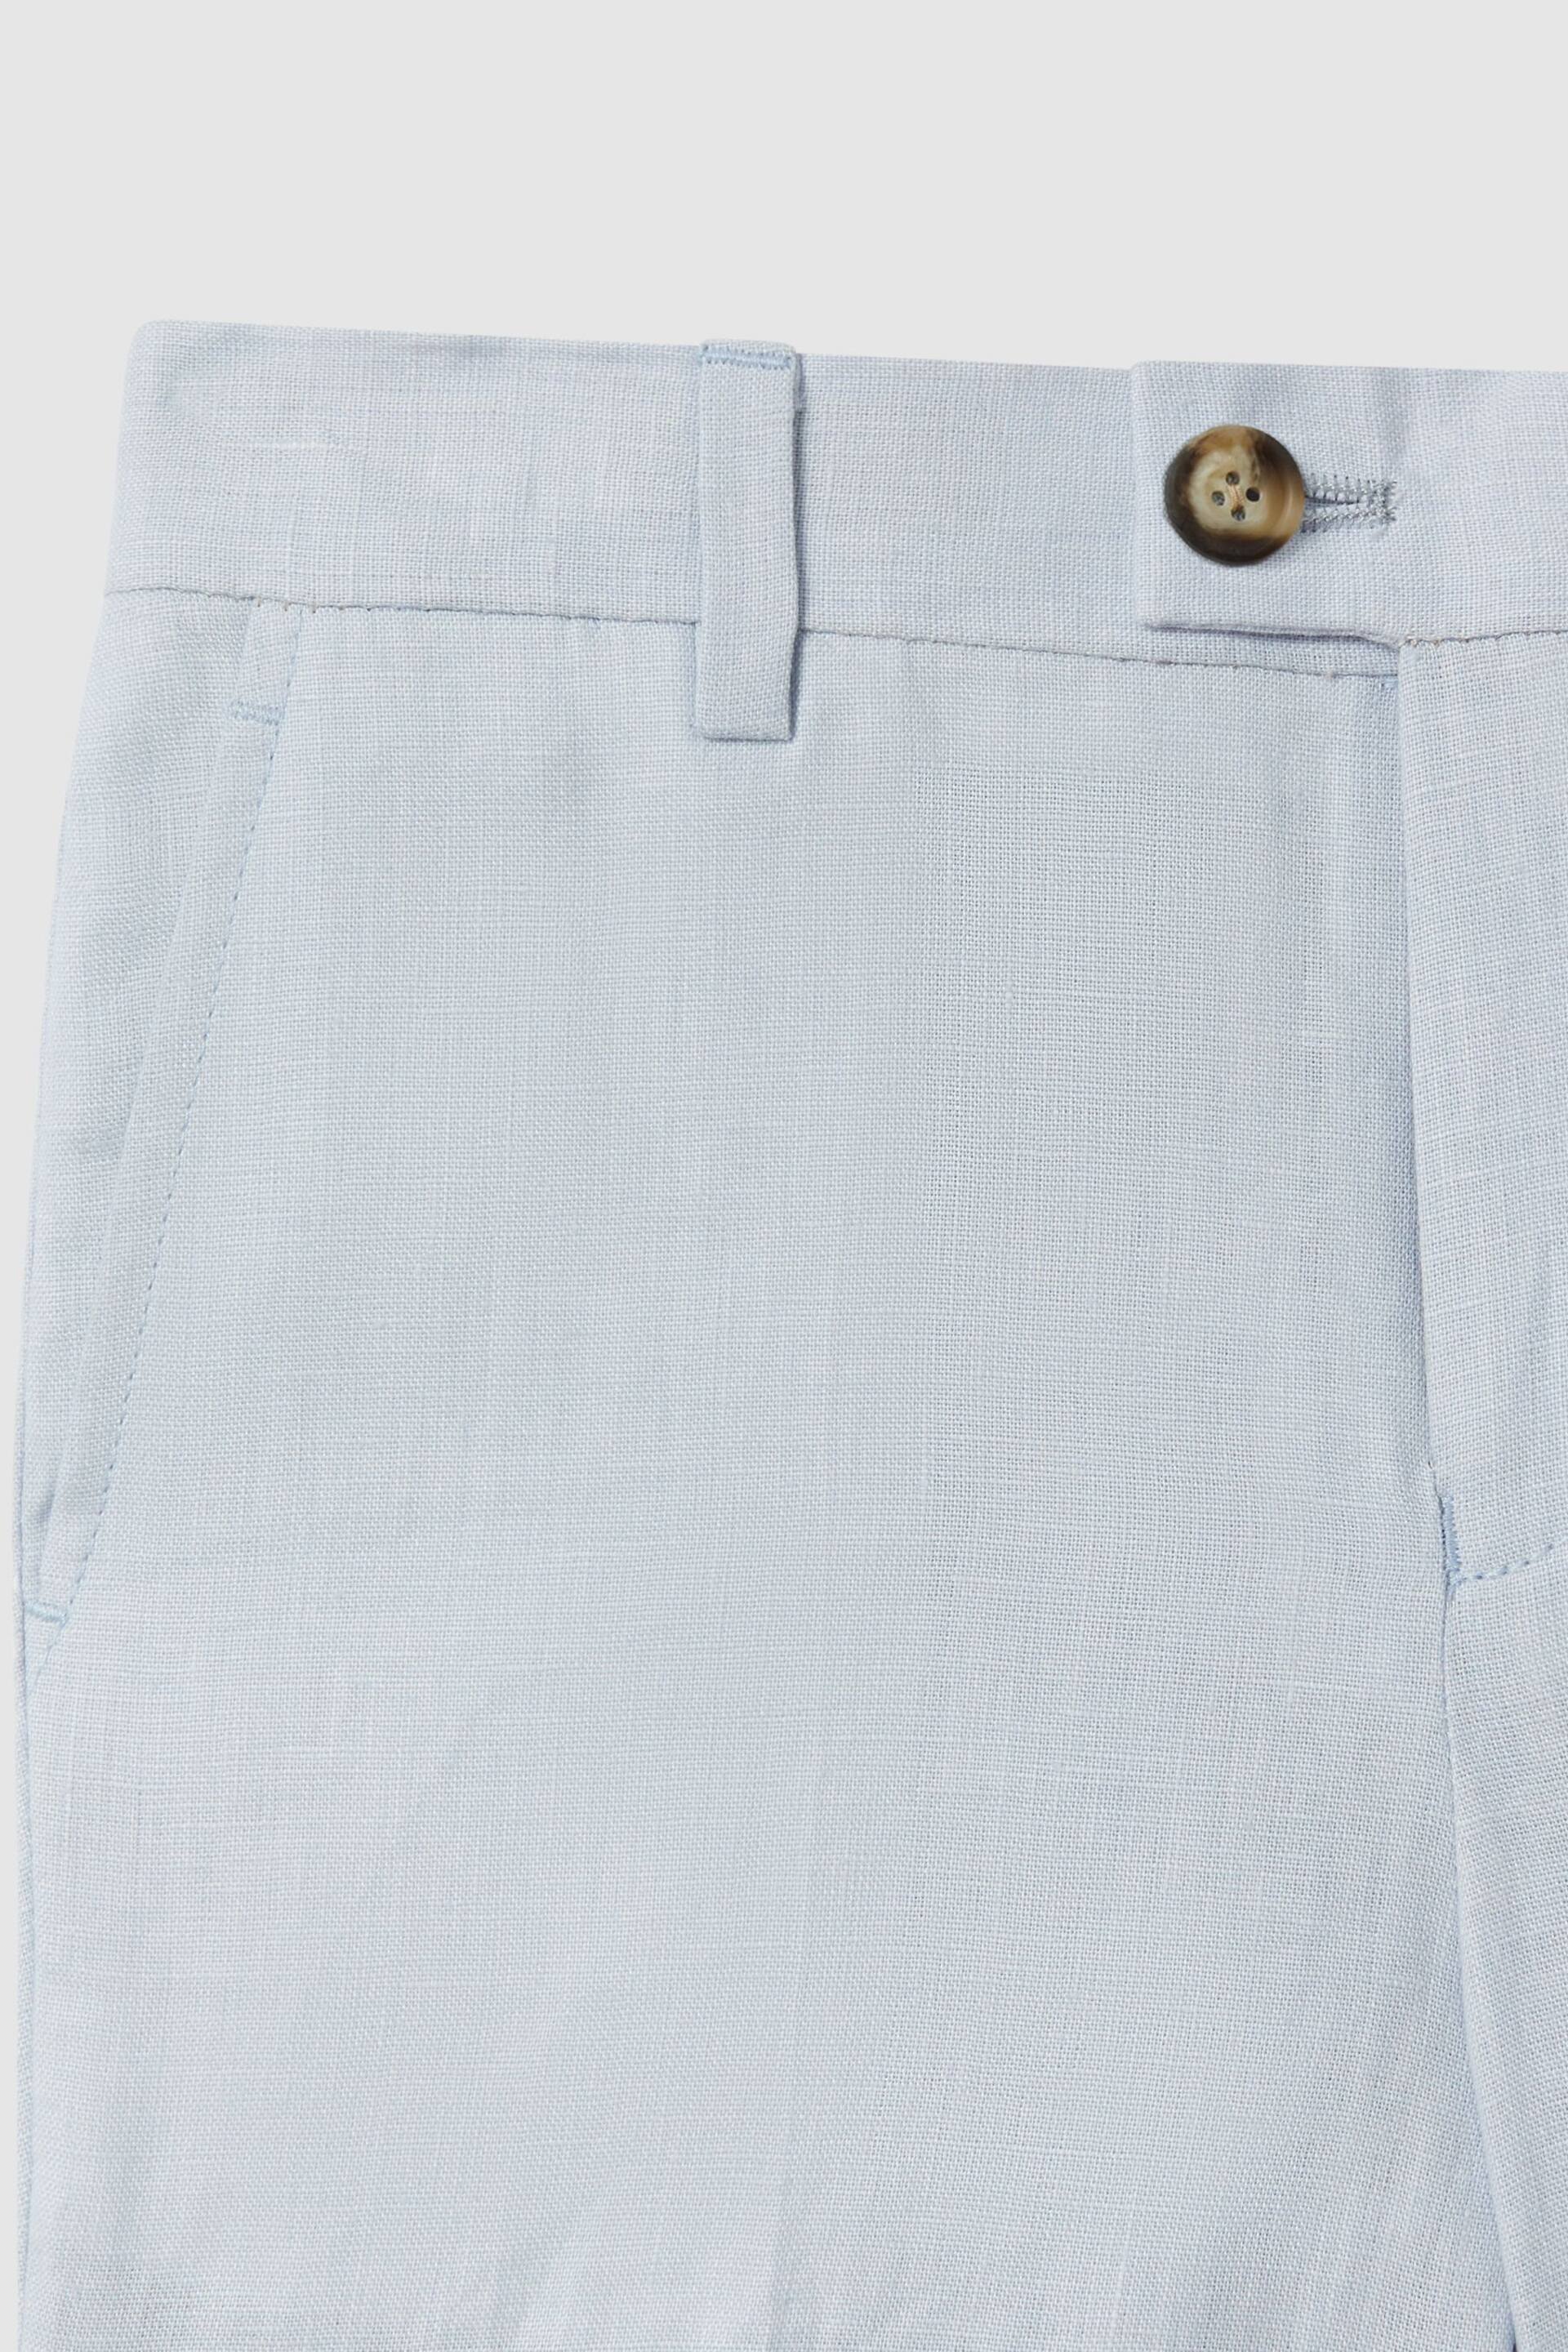 Reiss Soft Blue Kin Senior Slim Fit Linen Adjustable Shorts - Image 4 of 4